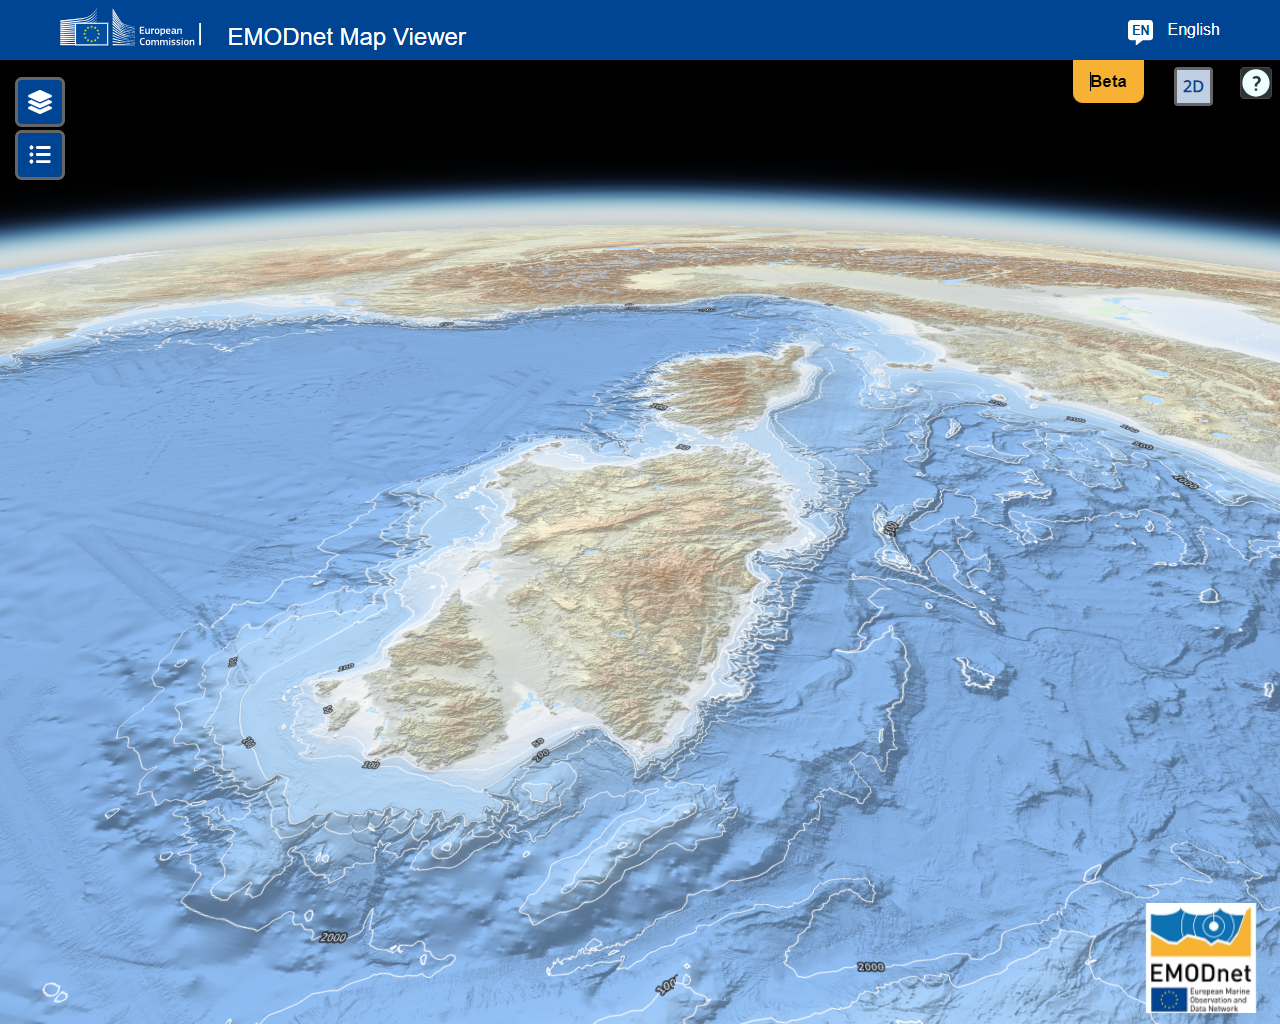 मेसोलिथिक अटलांटिक महासागर की 3डी बाथमीट्री जिसे अब भूमध्य सागर 3 के नाम से जाना जाता है